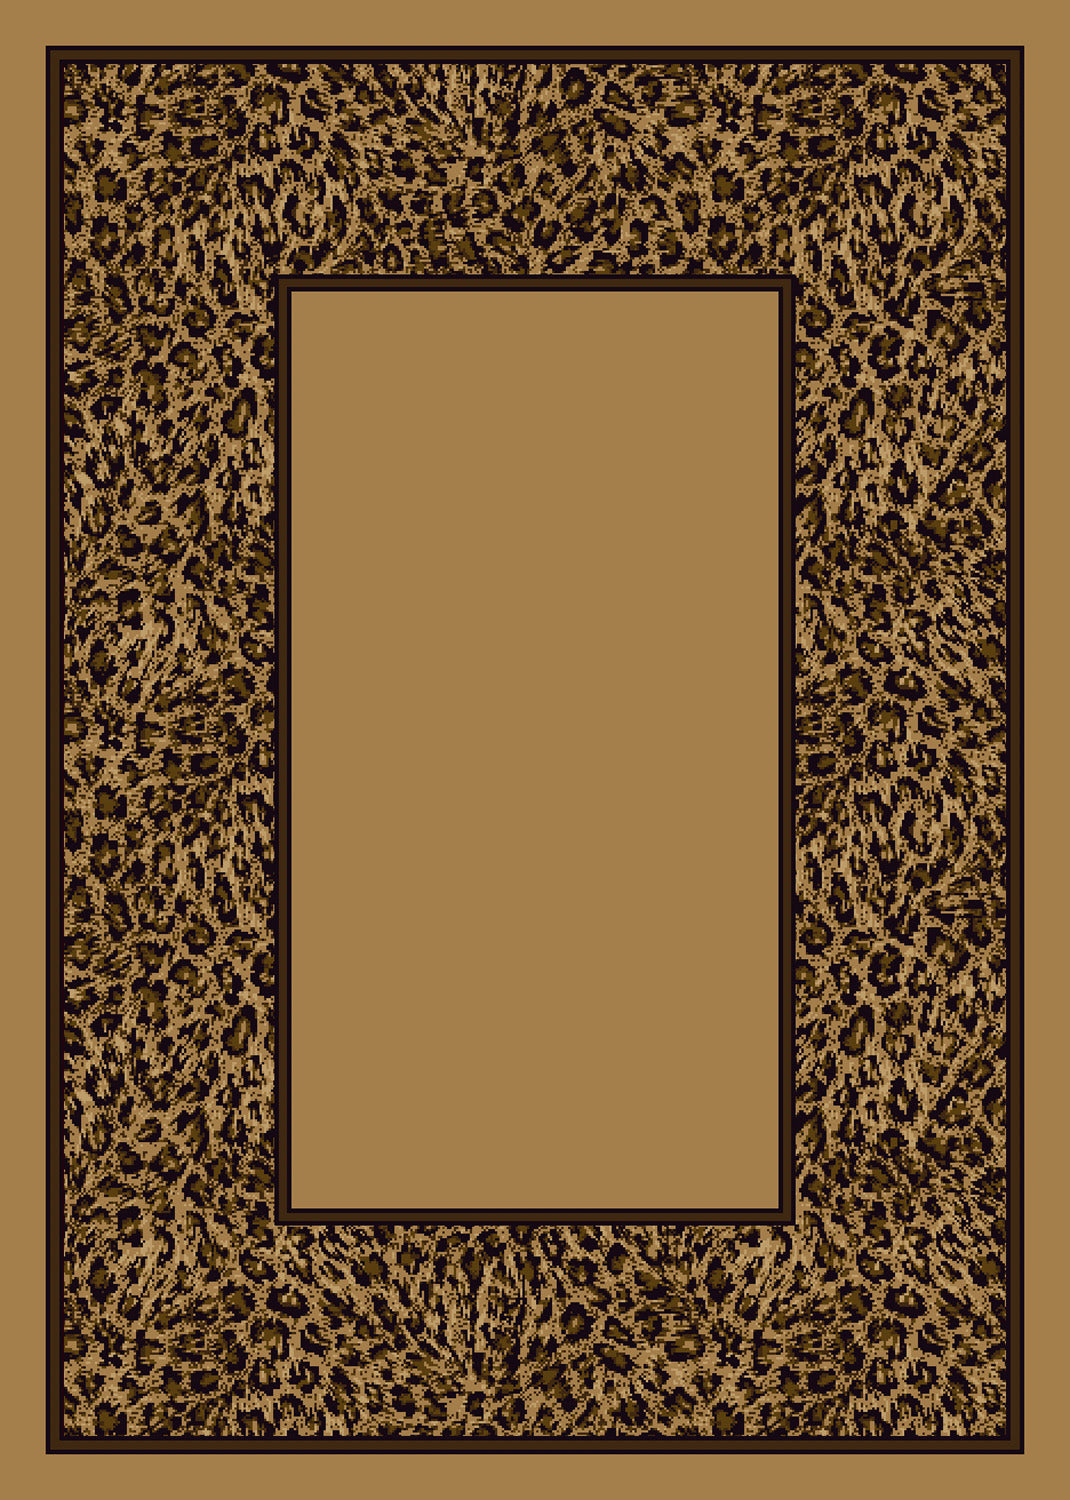 Wasabu Golden Leopard